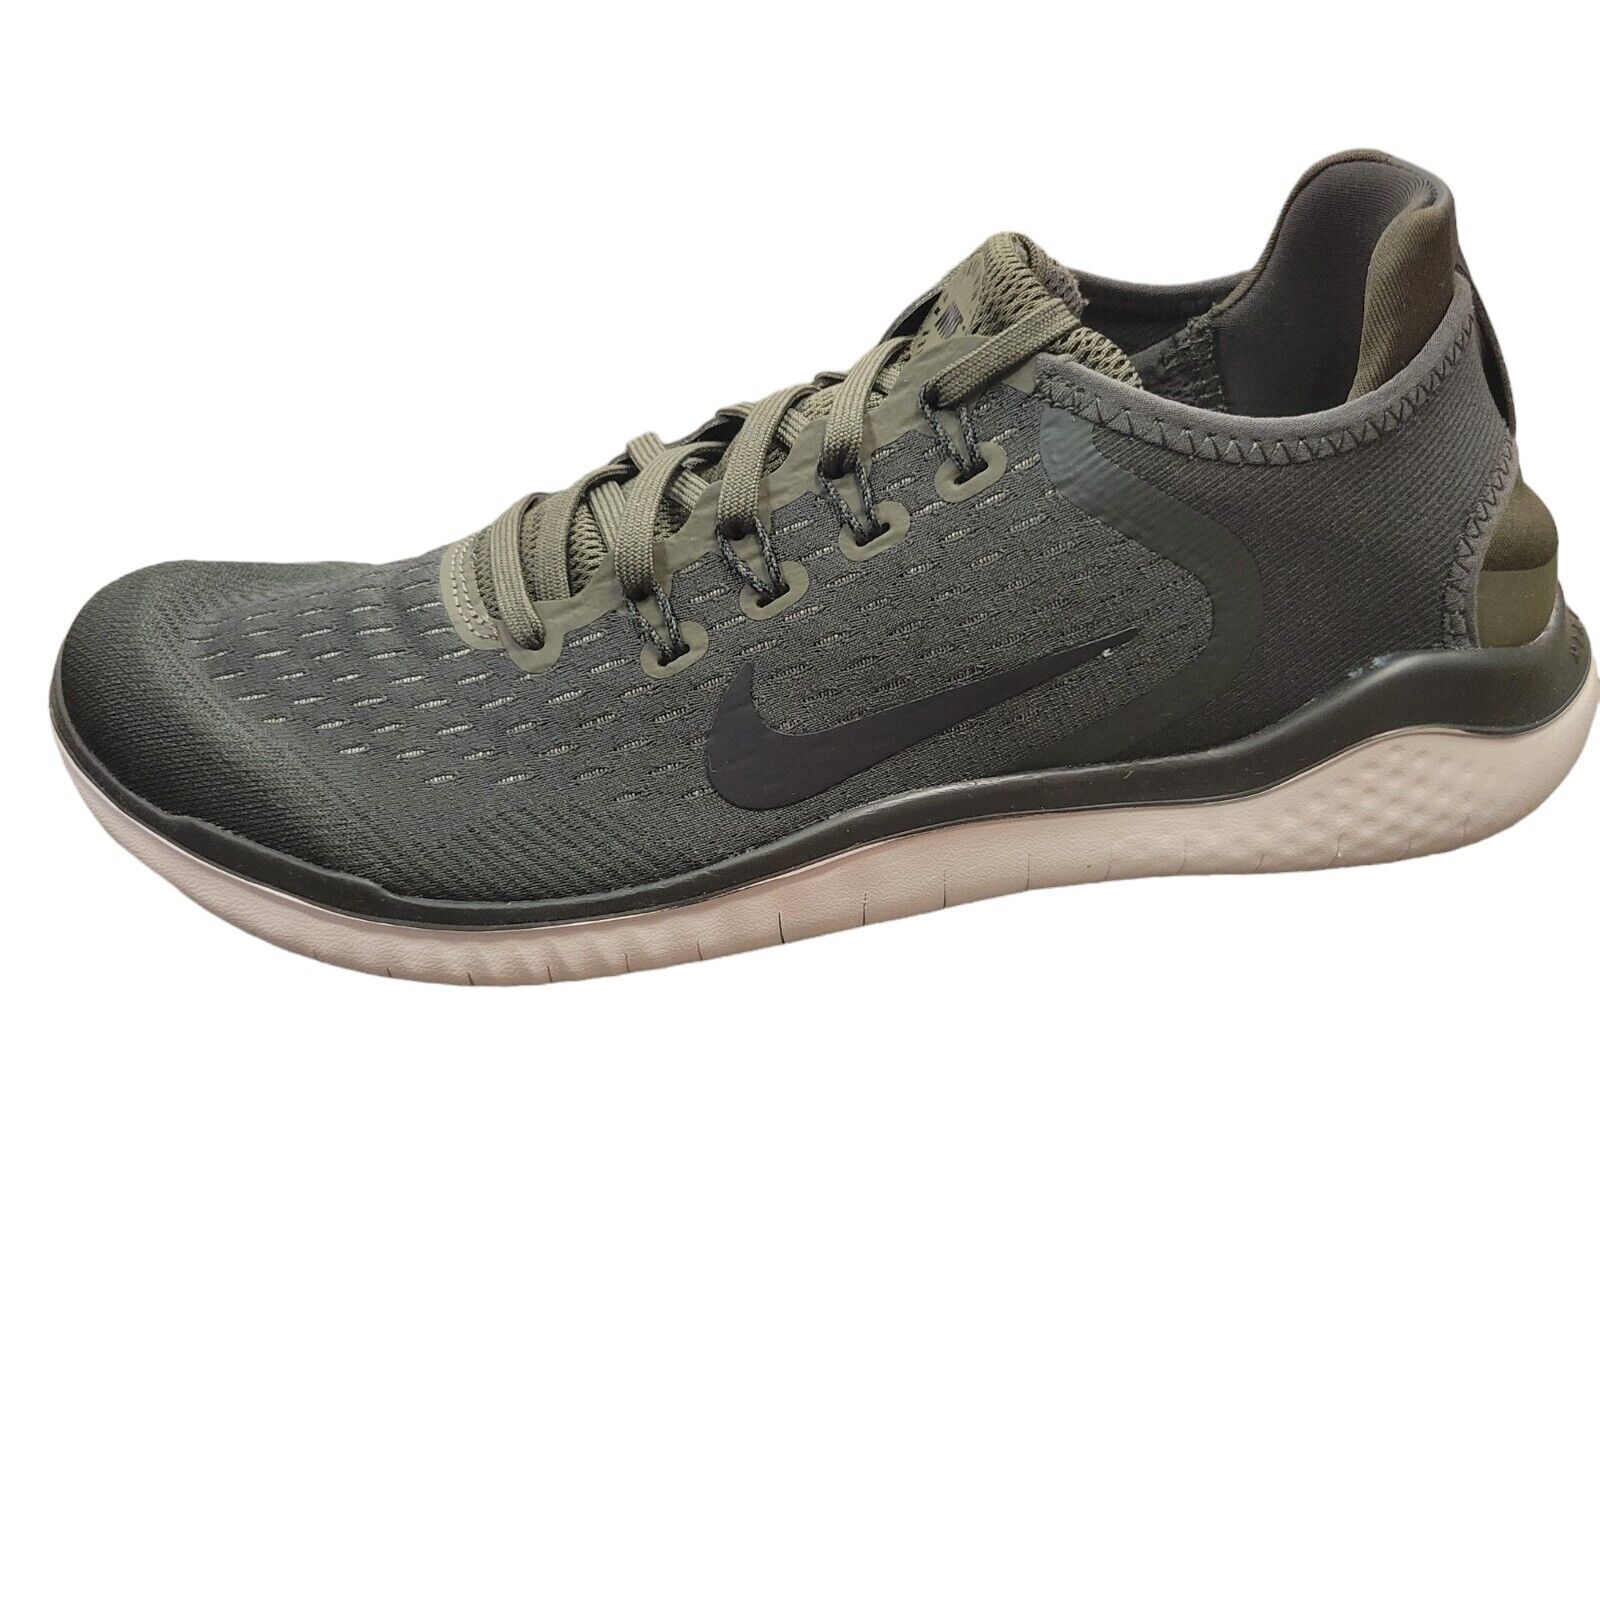 Nike Free RN 2018 Running Shoes Cargo Khaki 942836-300 Men’s Size 9